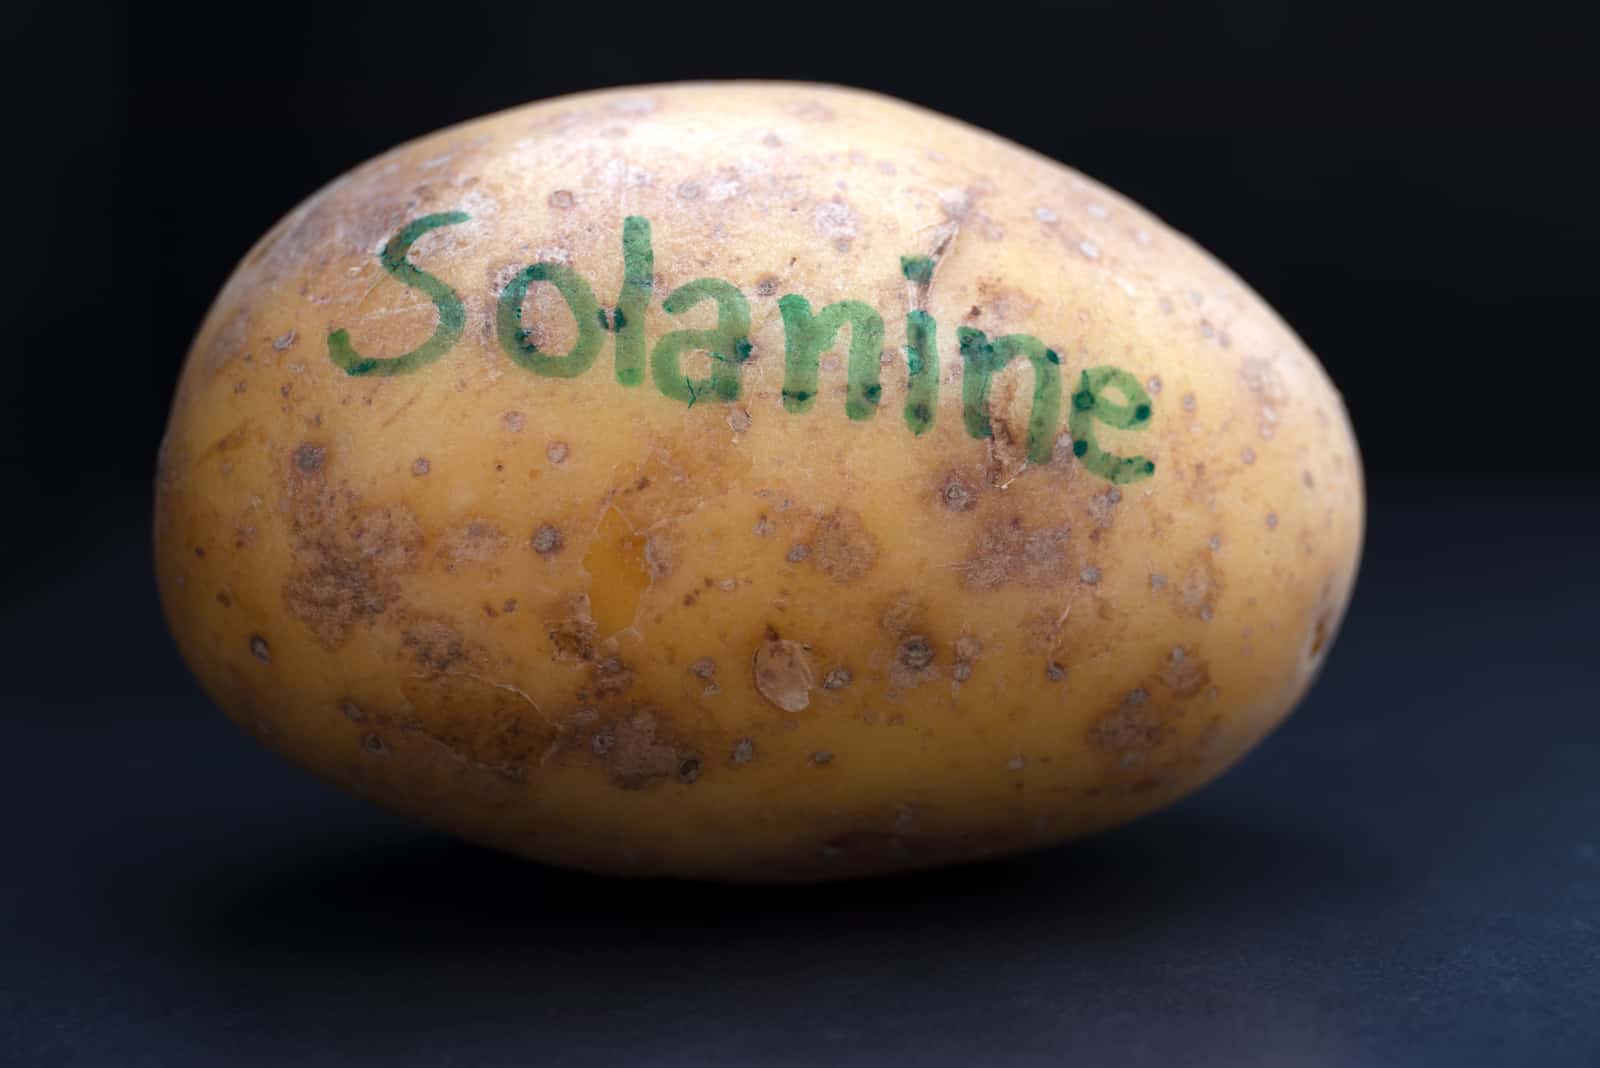 Kartoffel und Solanin, erhöhte Produktion, wenn sie Licht ausgesetzt wurden